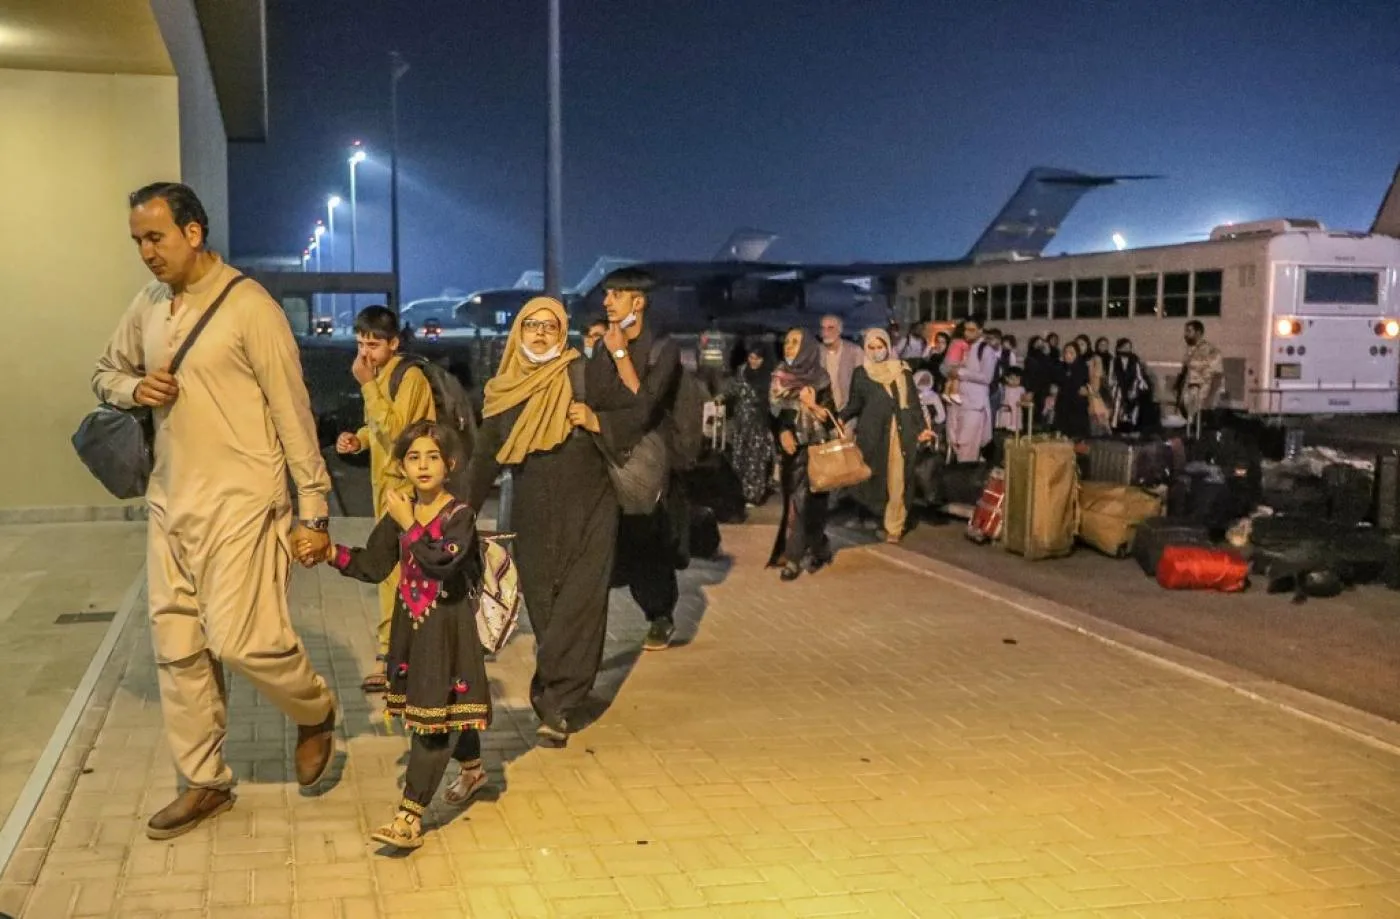 وصول الأفراد الذين تم إجلاؤهم من أفغانستان إلى قاعدة العديد الجويةالأمريكية في قطر